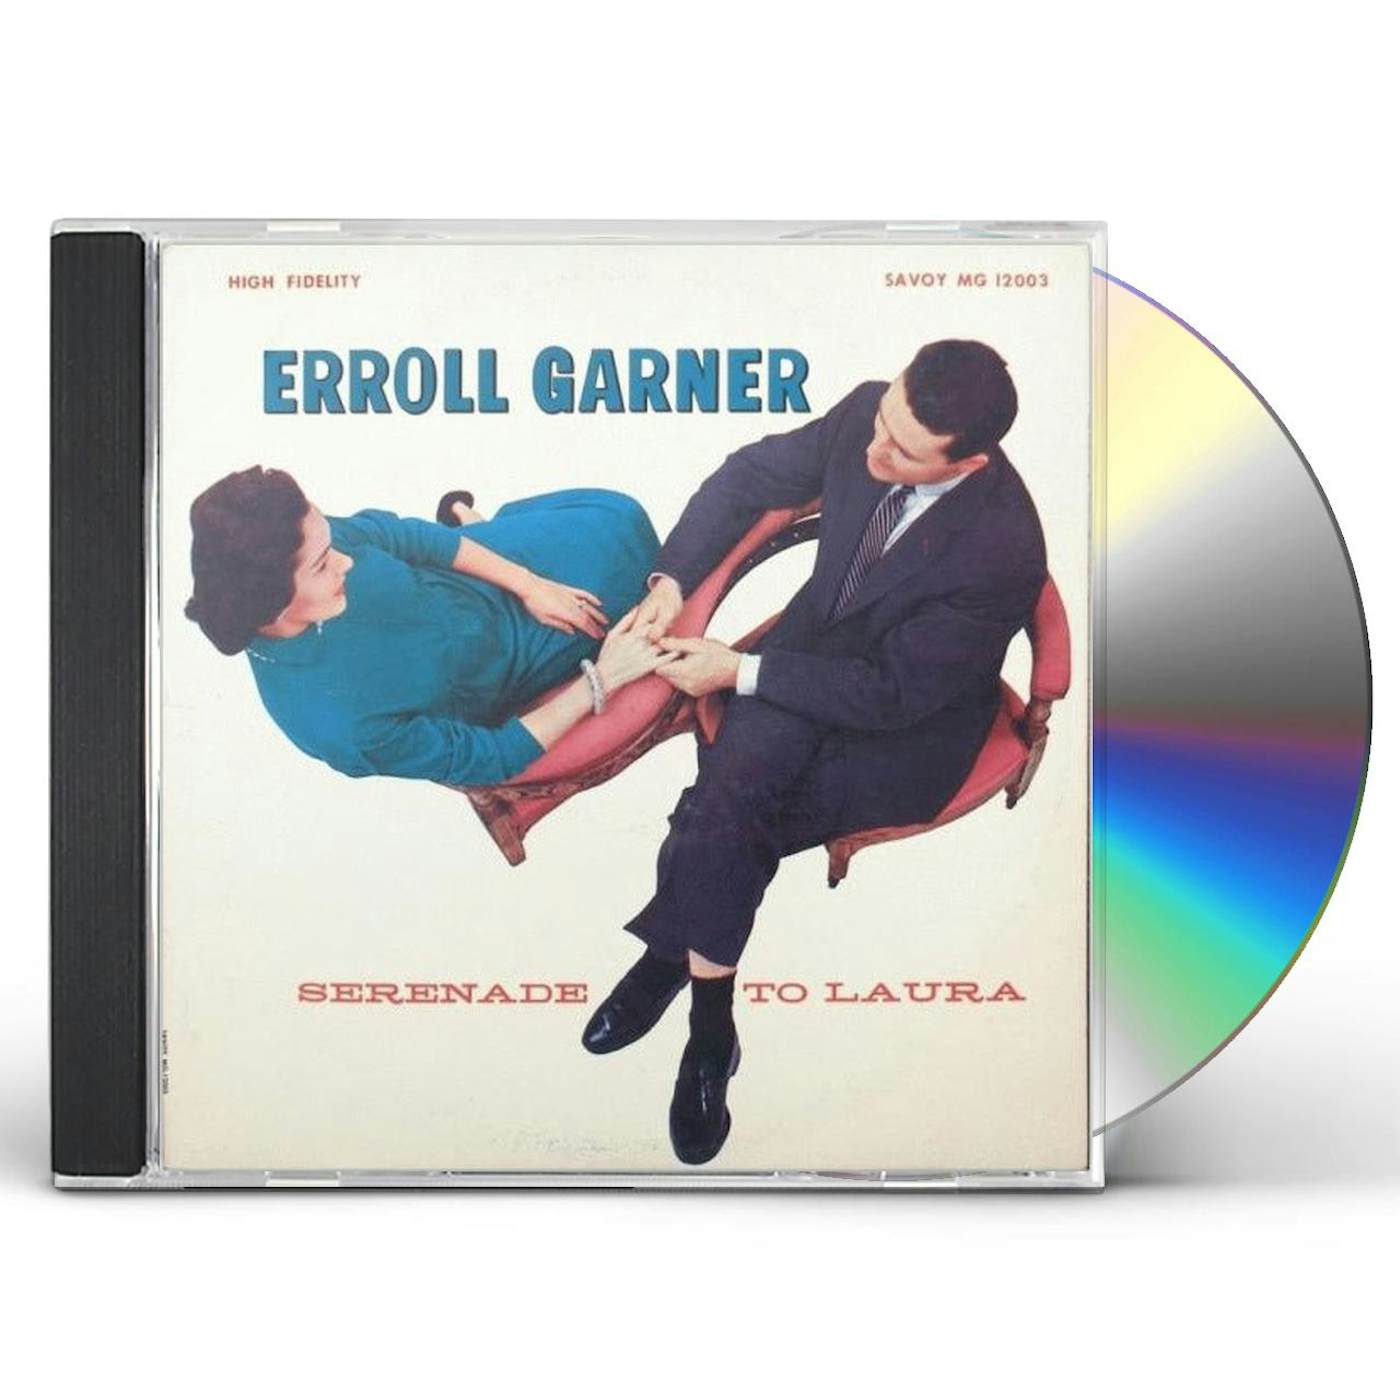 Erroll Garner SERENADE TO 'LAURA' CD